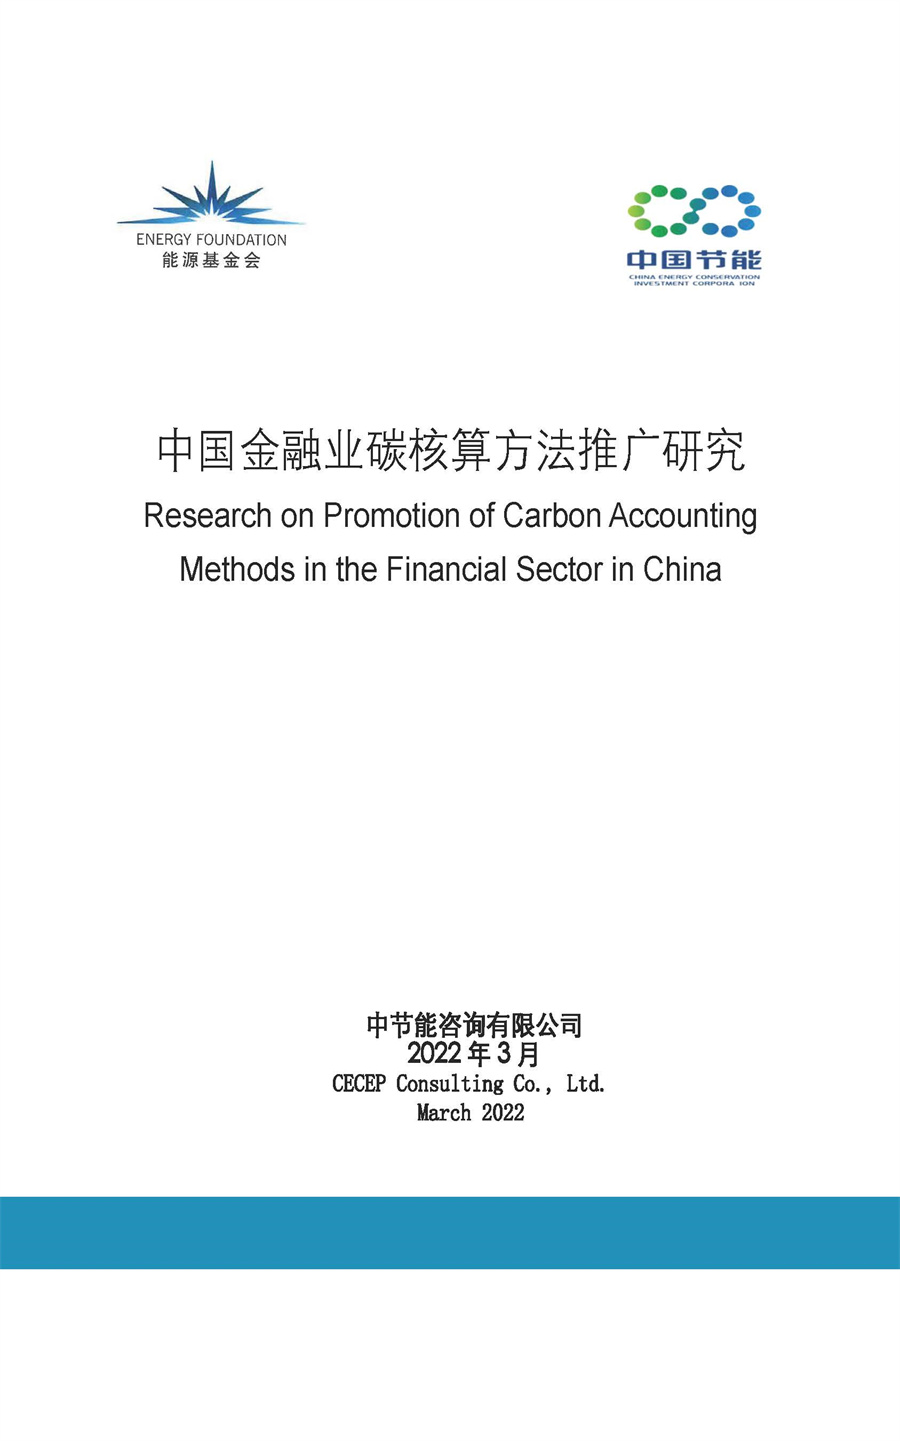 2022中国金融业碳核算方法推广研究报告